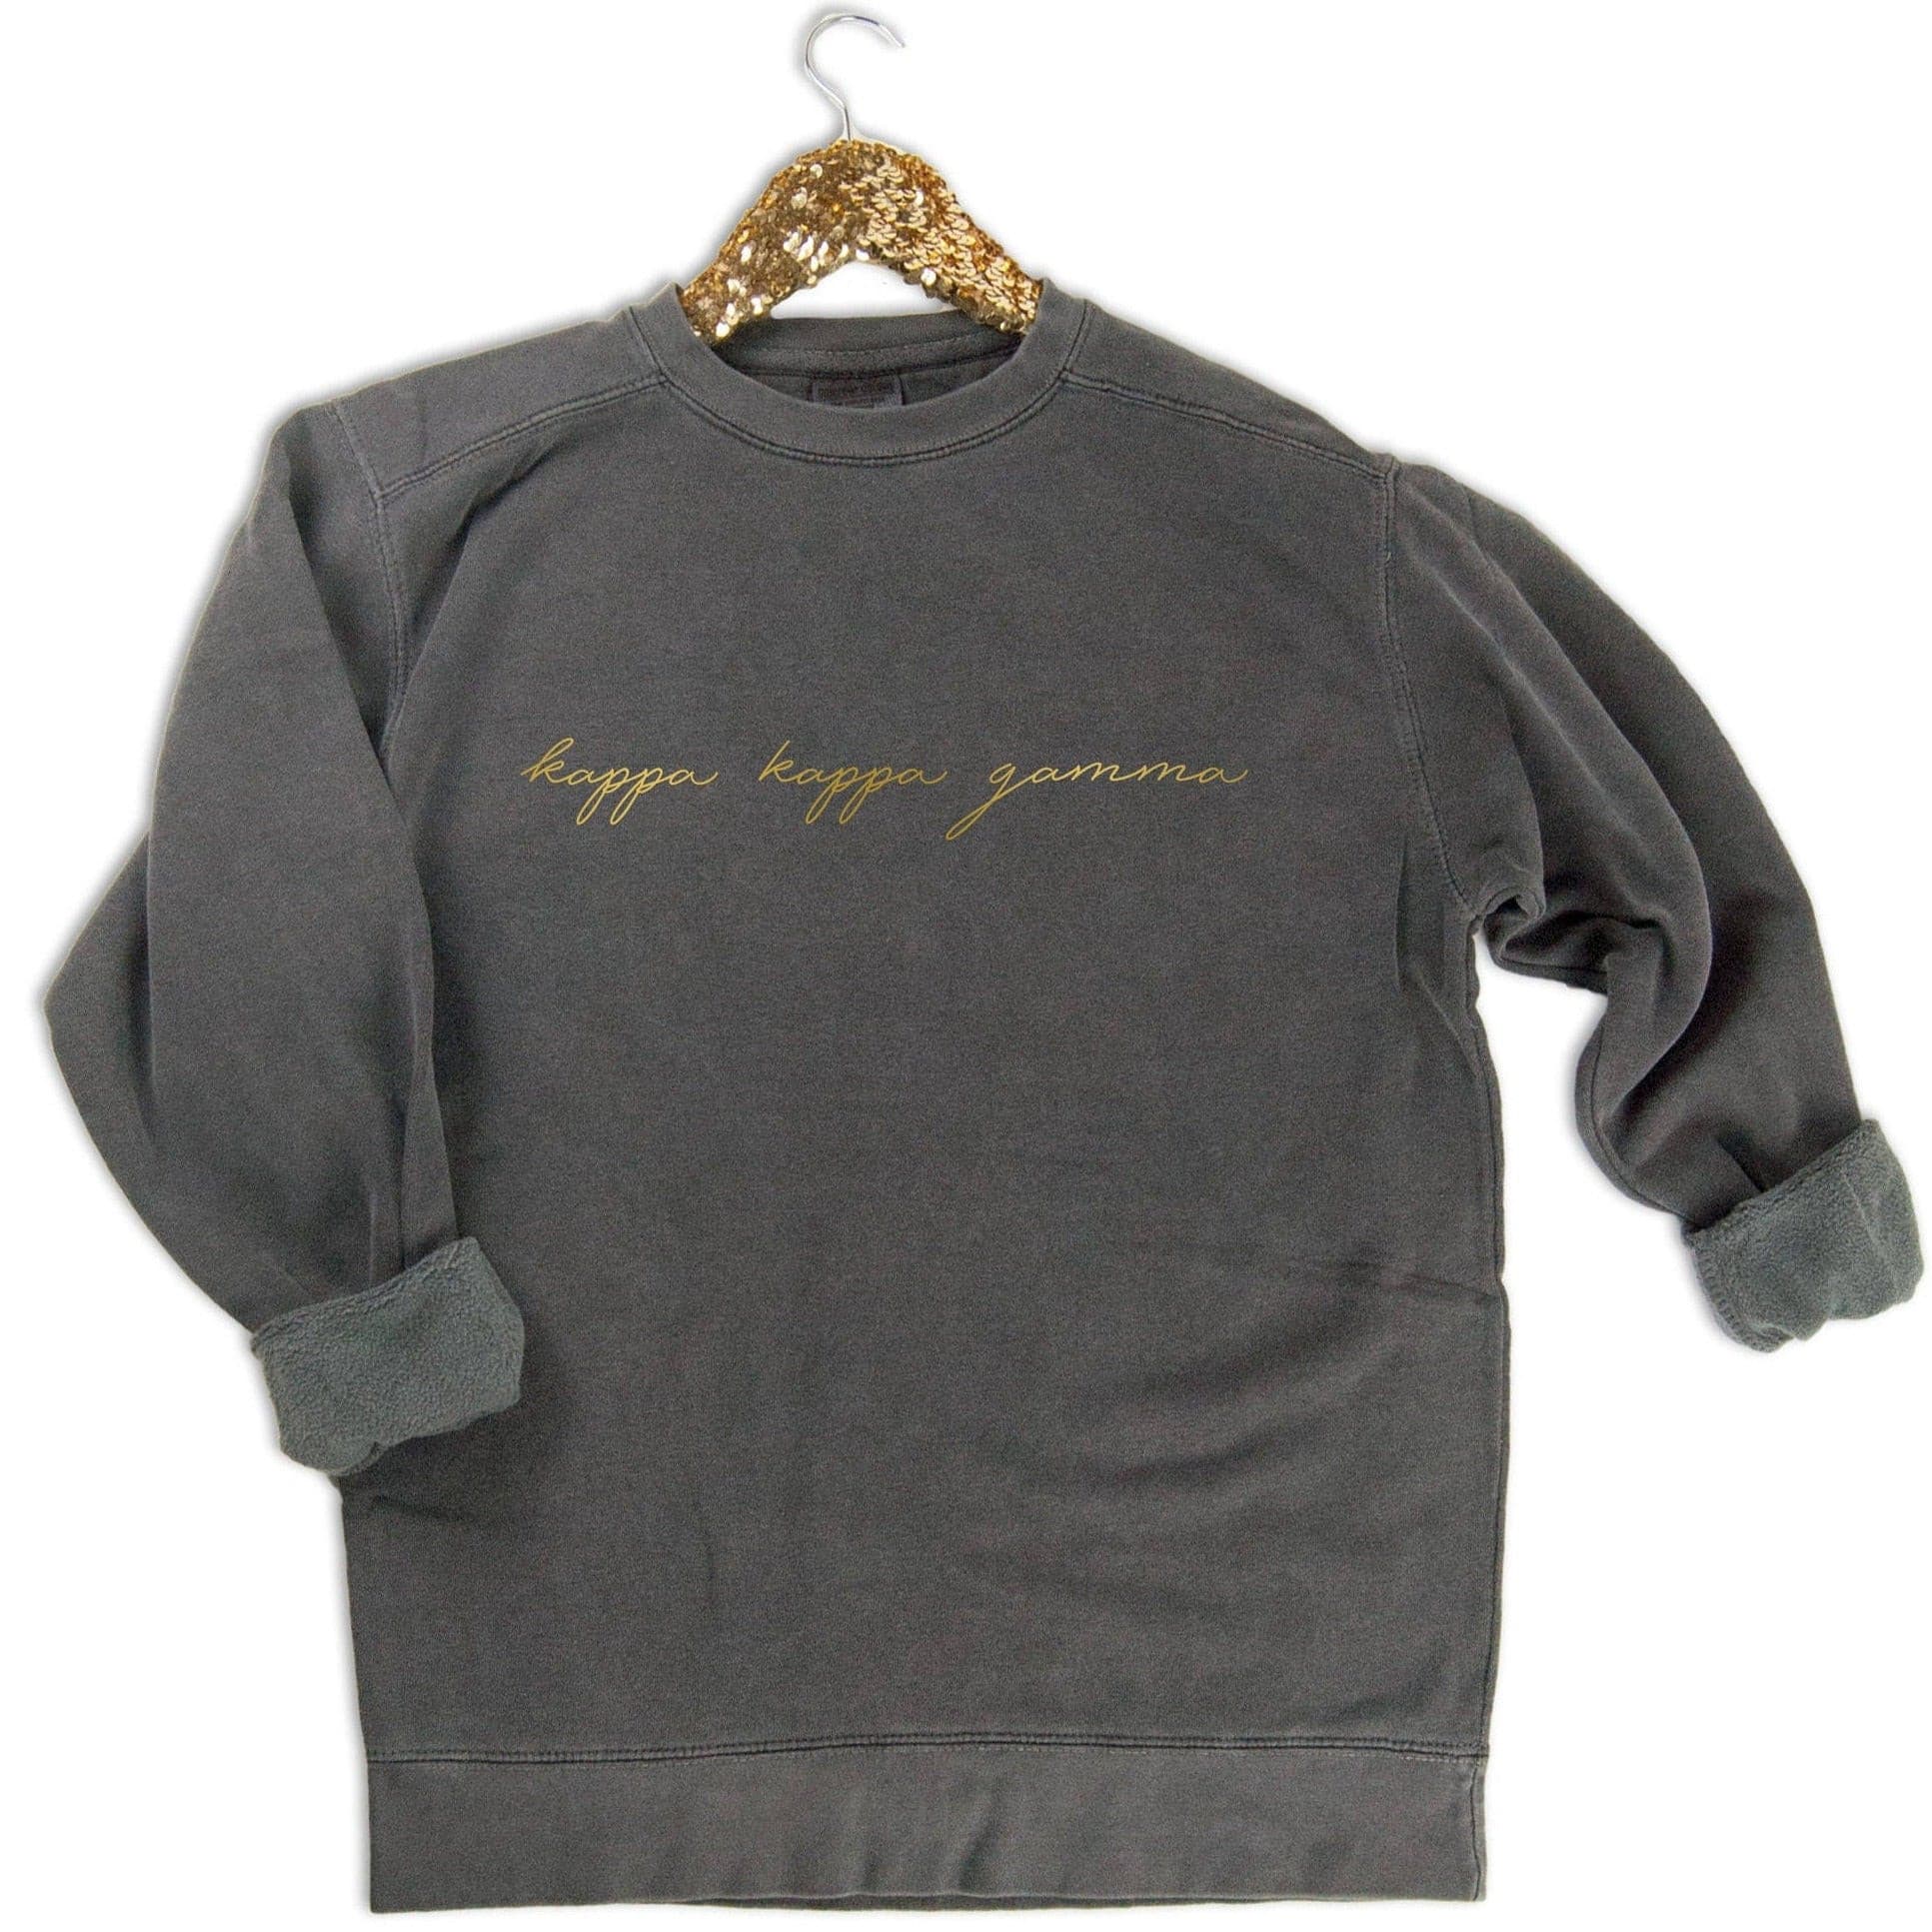 Kappa Kappa Gamma Gold Script Letters Sweatshirt - Go Greek Chic